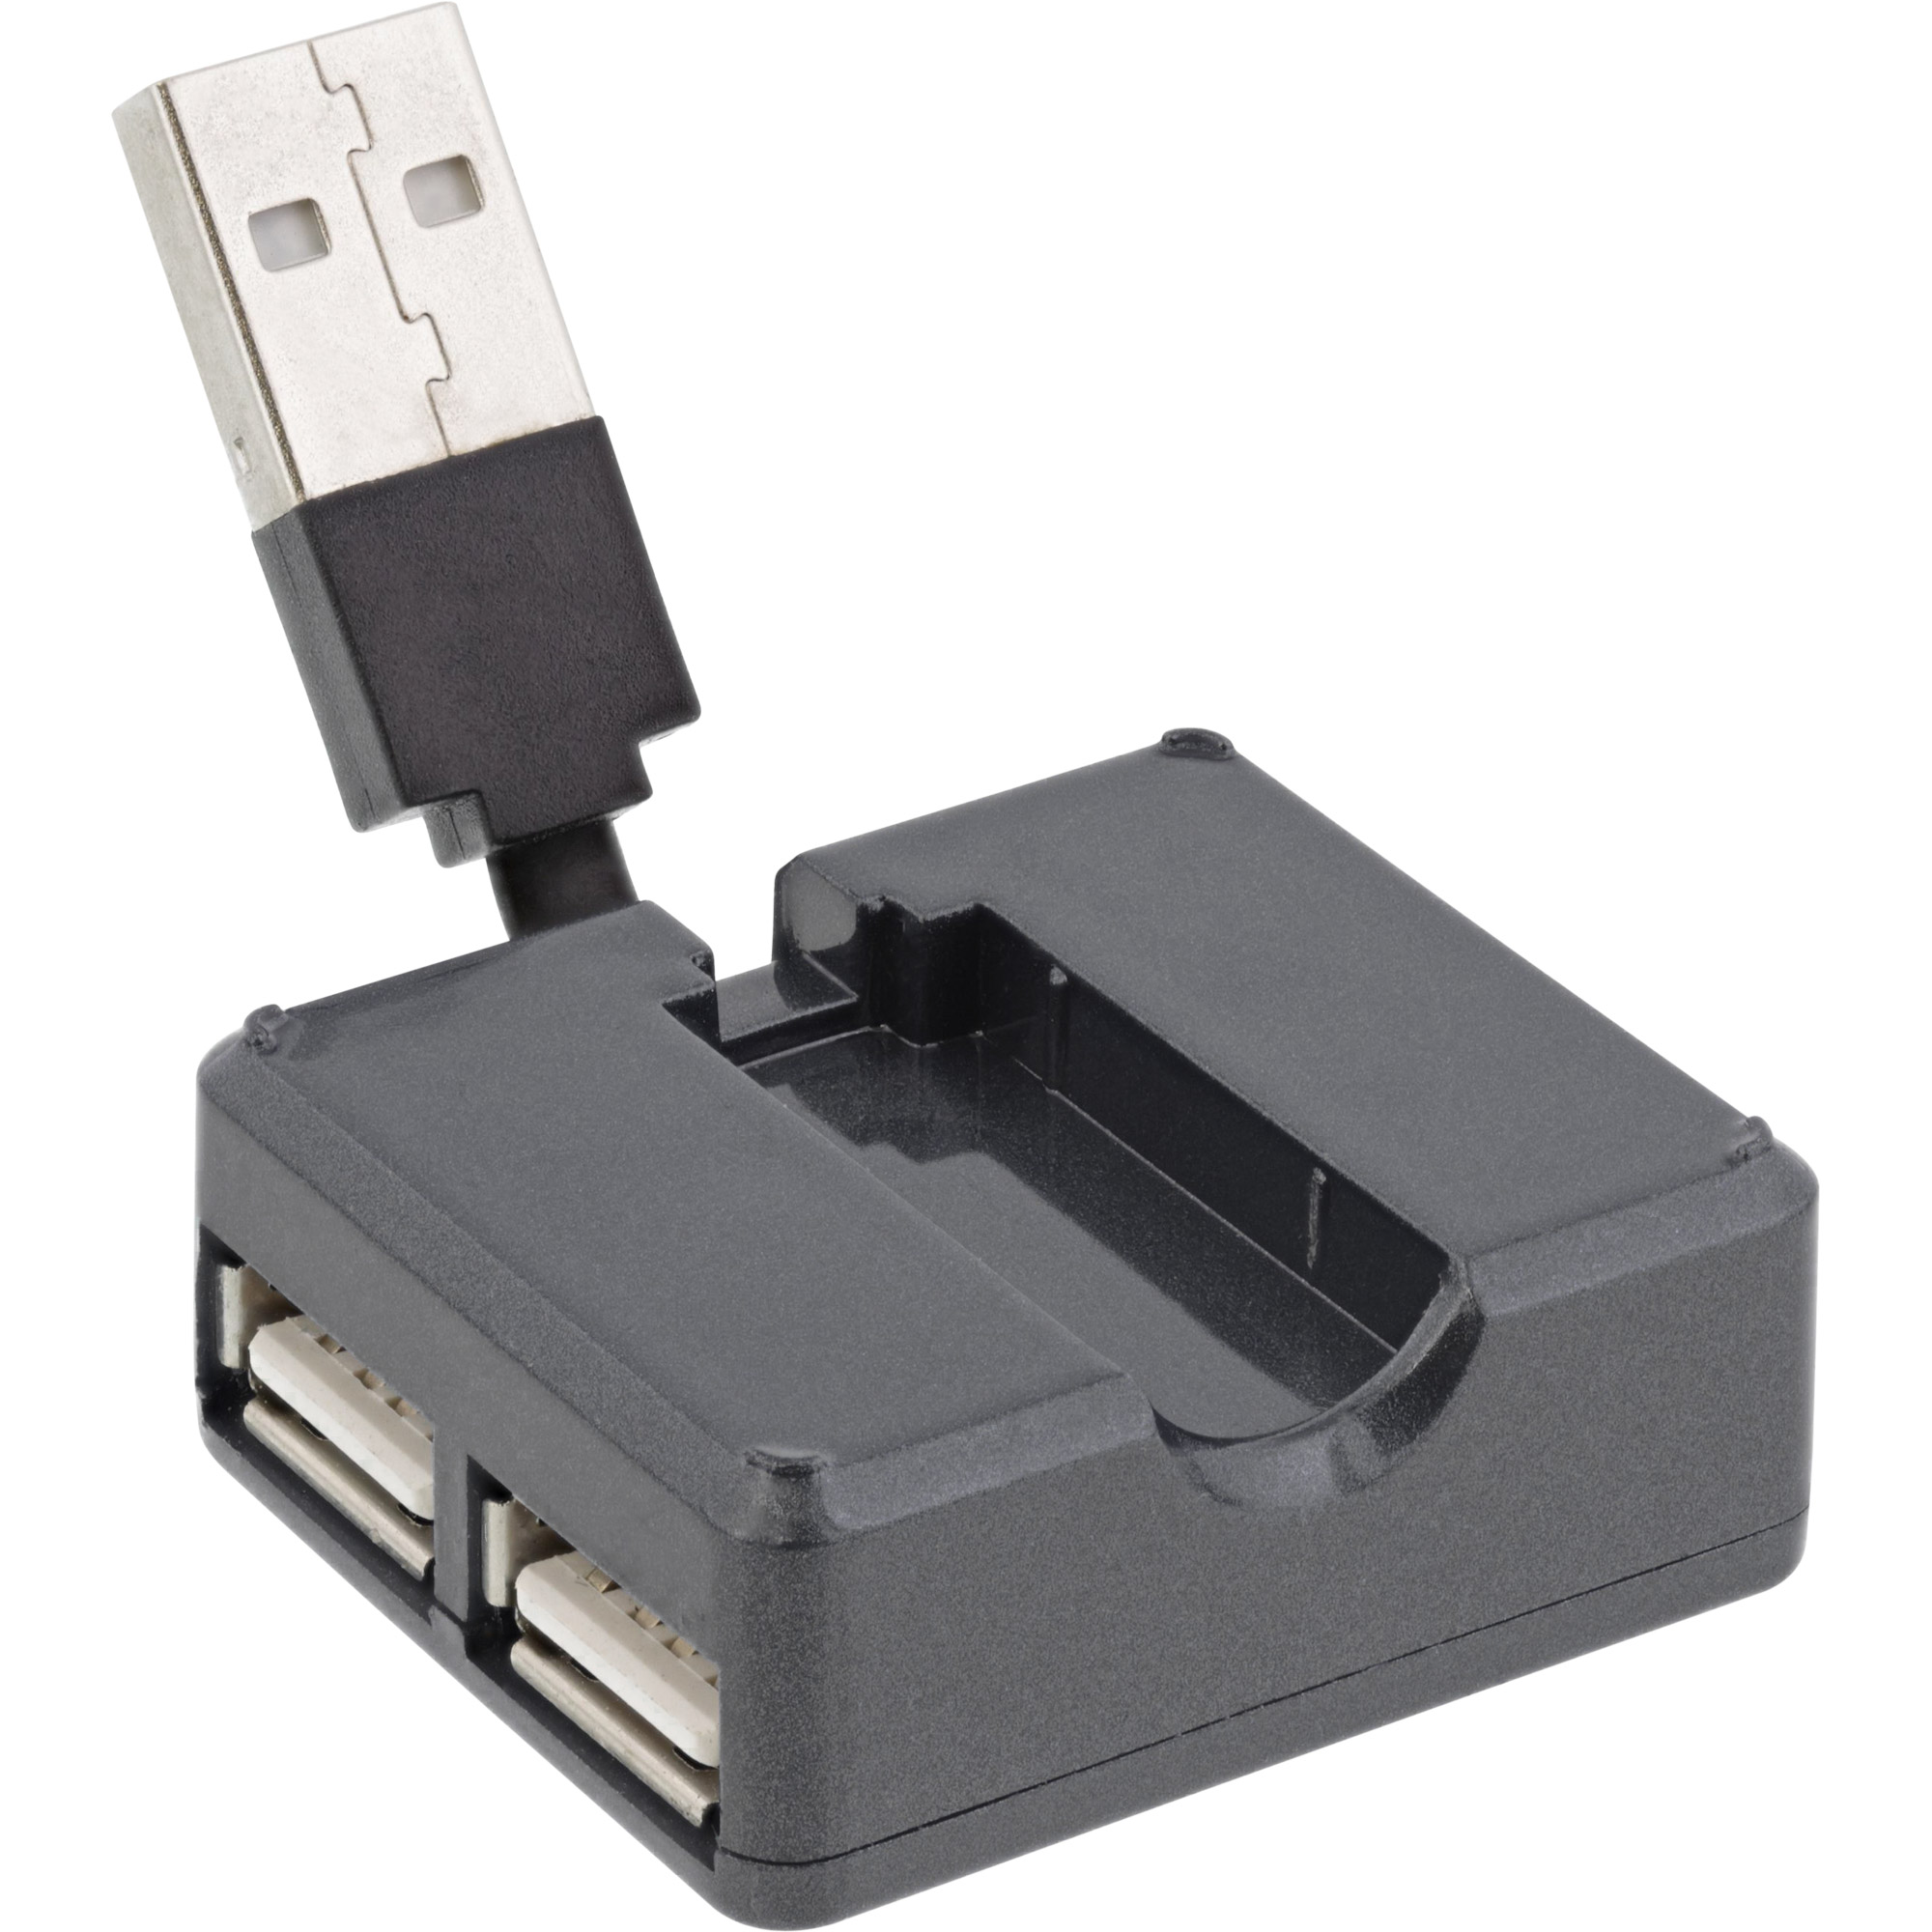 Einbau USB-Hub 2 in 1 Edelstahl gebürstet USB und USB-C, Edelstahl,  Steckdose für Smartphone, Tablet, E-Reader Möbeleinbau 12V Edelstahl  gebürstet